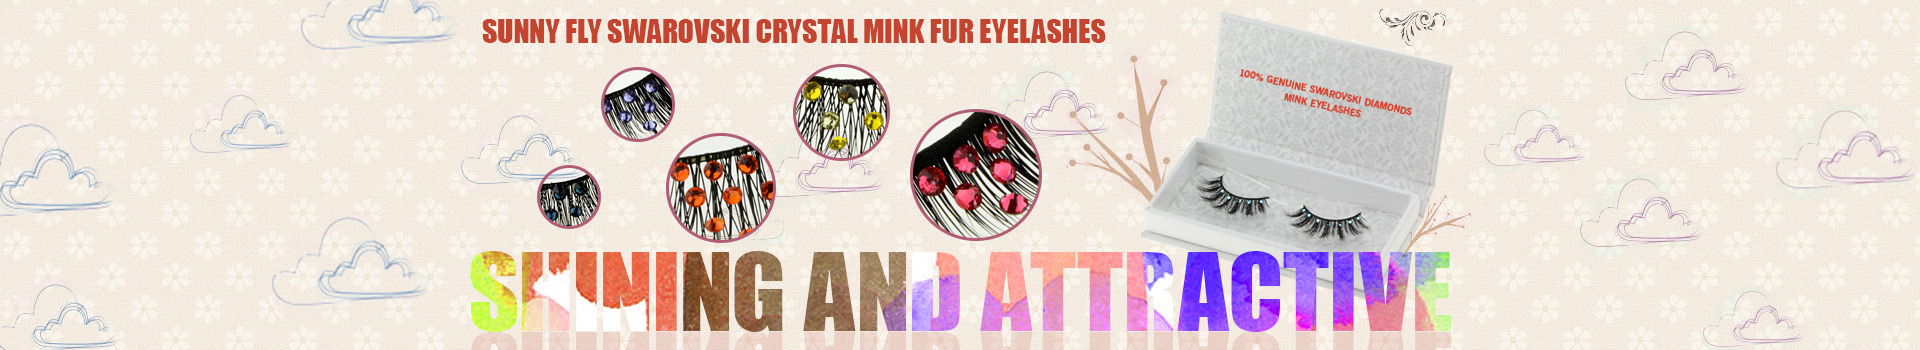 Swarovski Crystal Mink Fur Eyelashes MS02